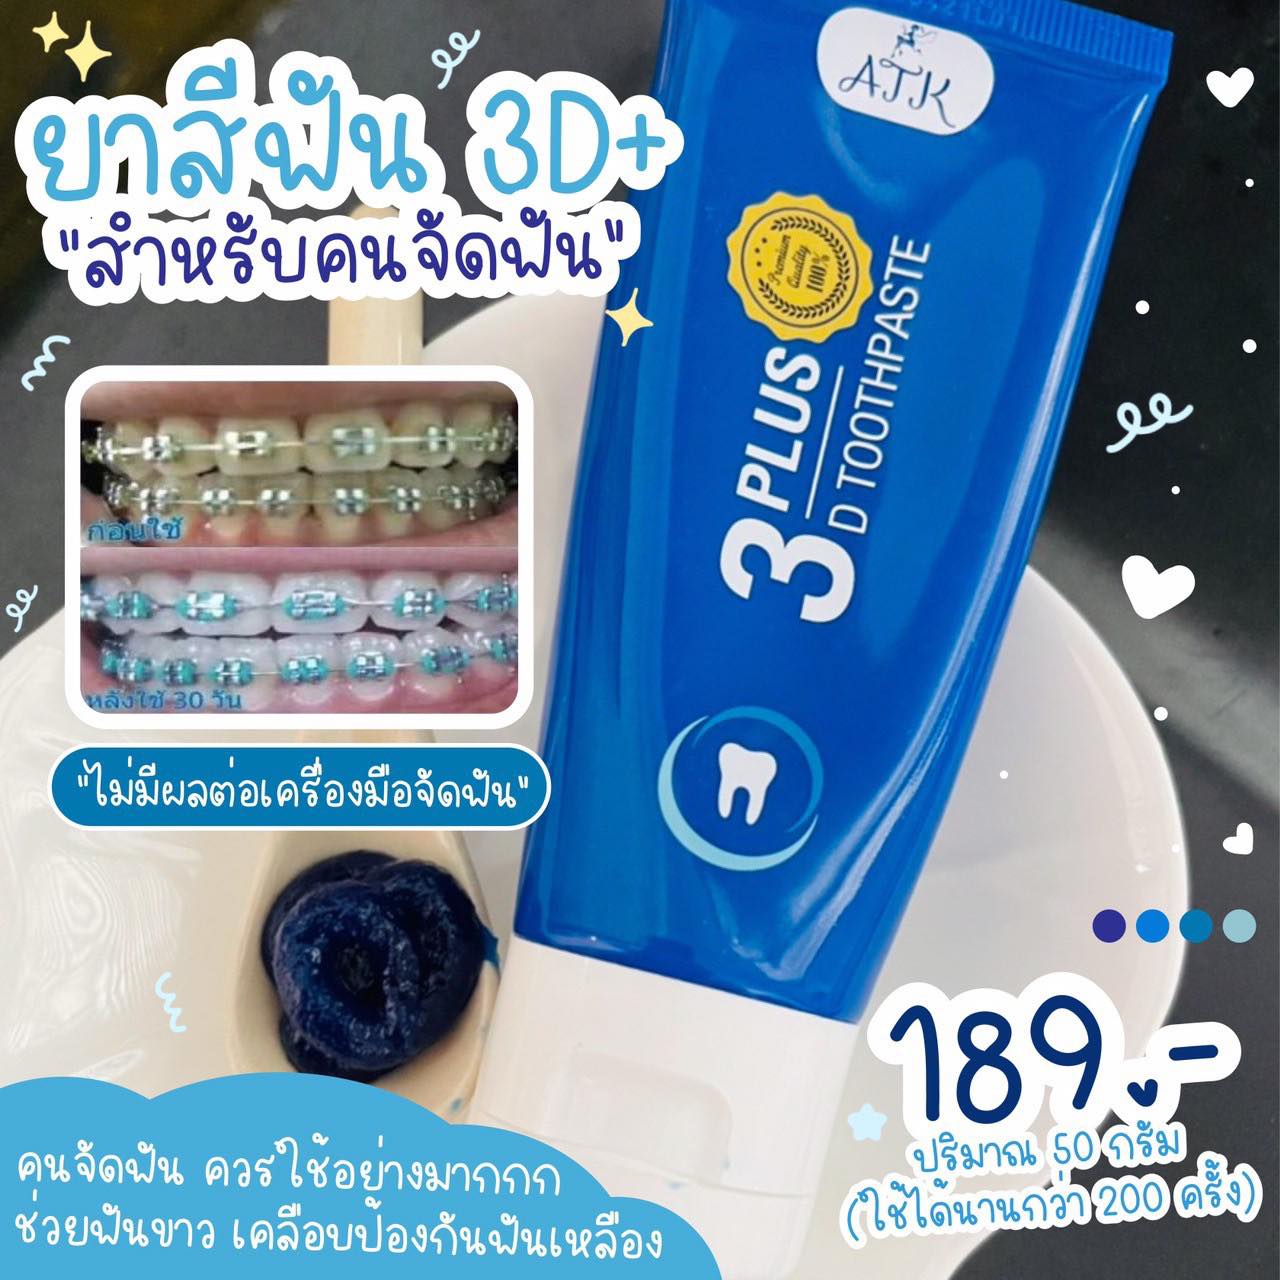 ยาสีฟัน 3D PLUS ยาสีฟันเนื้อเจลนาโน ช่วยเคลือบป้องกันฟันเหลือง ฟอกฟันขาว ลดคราบเห็ยปูน #ไอเทมเด็ดของคนจัดฟัน